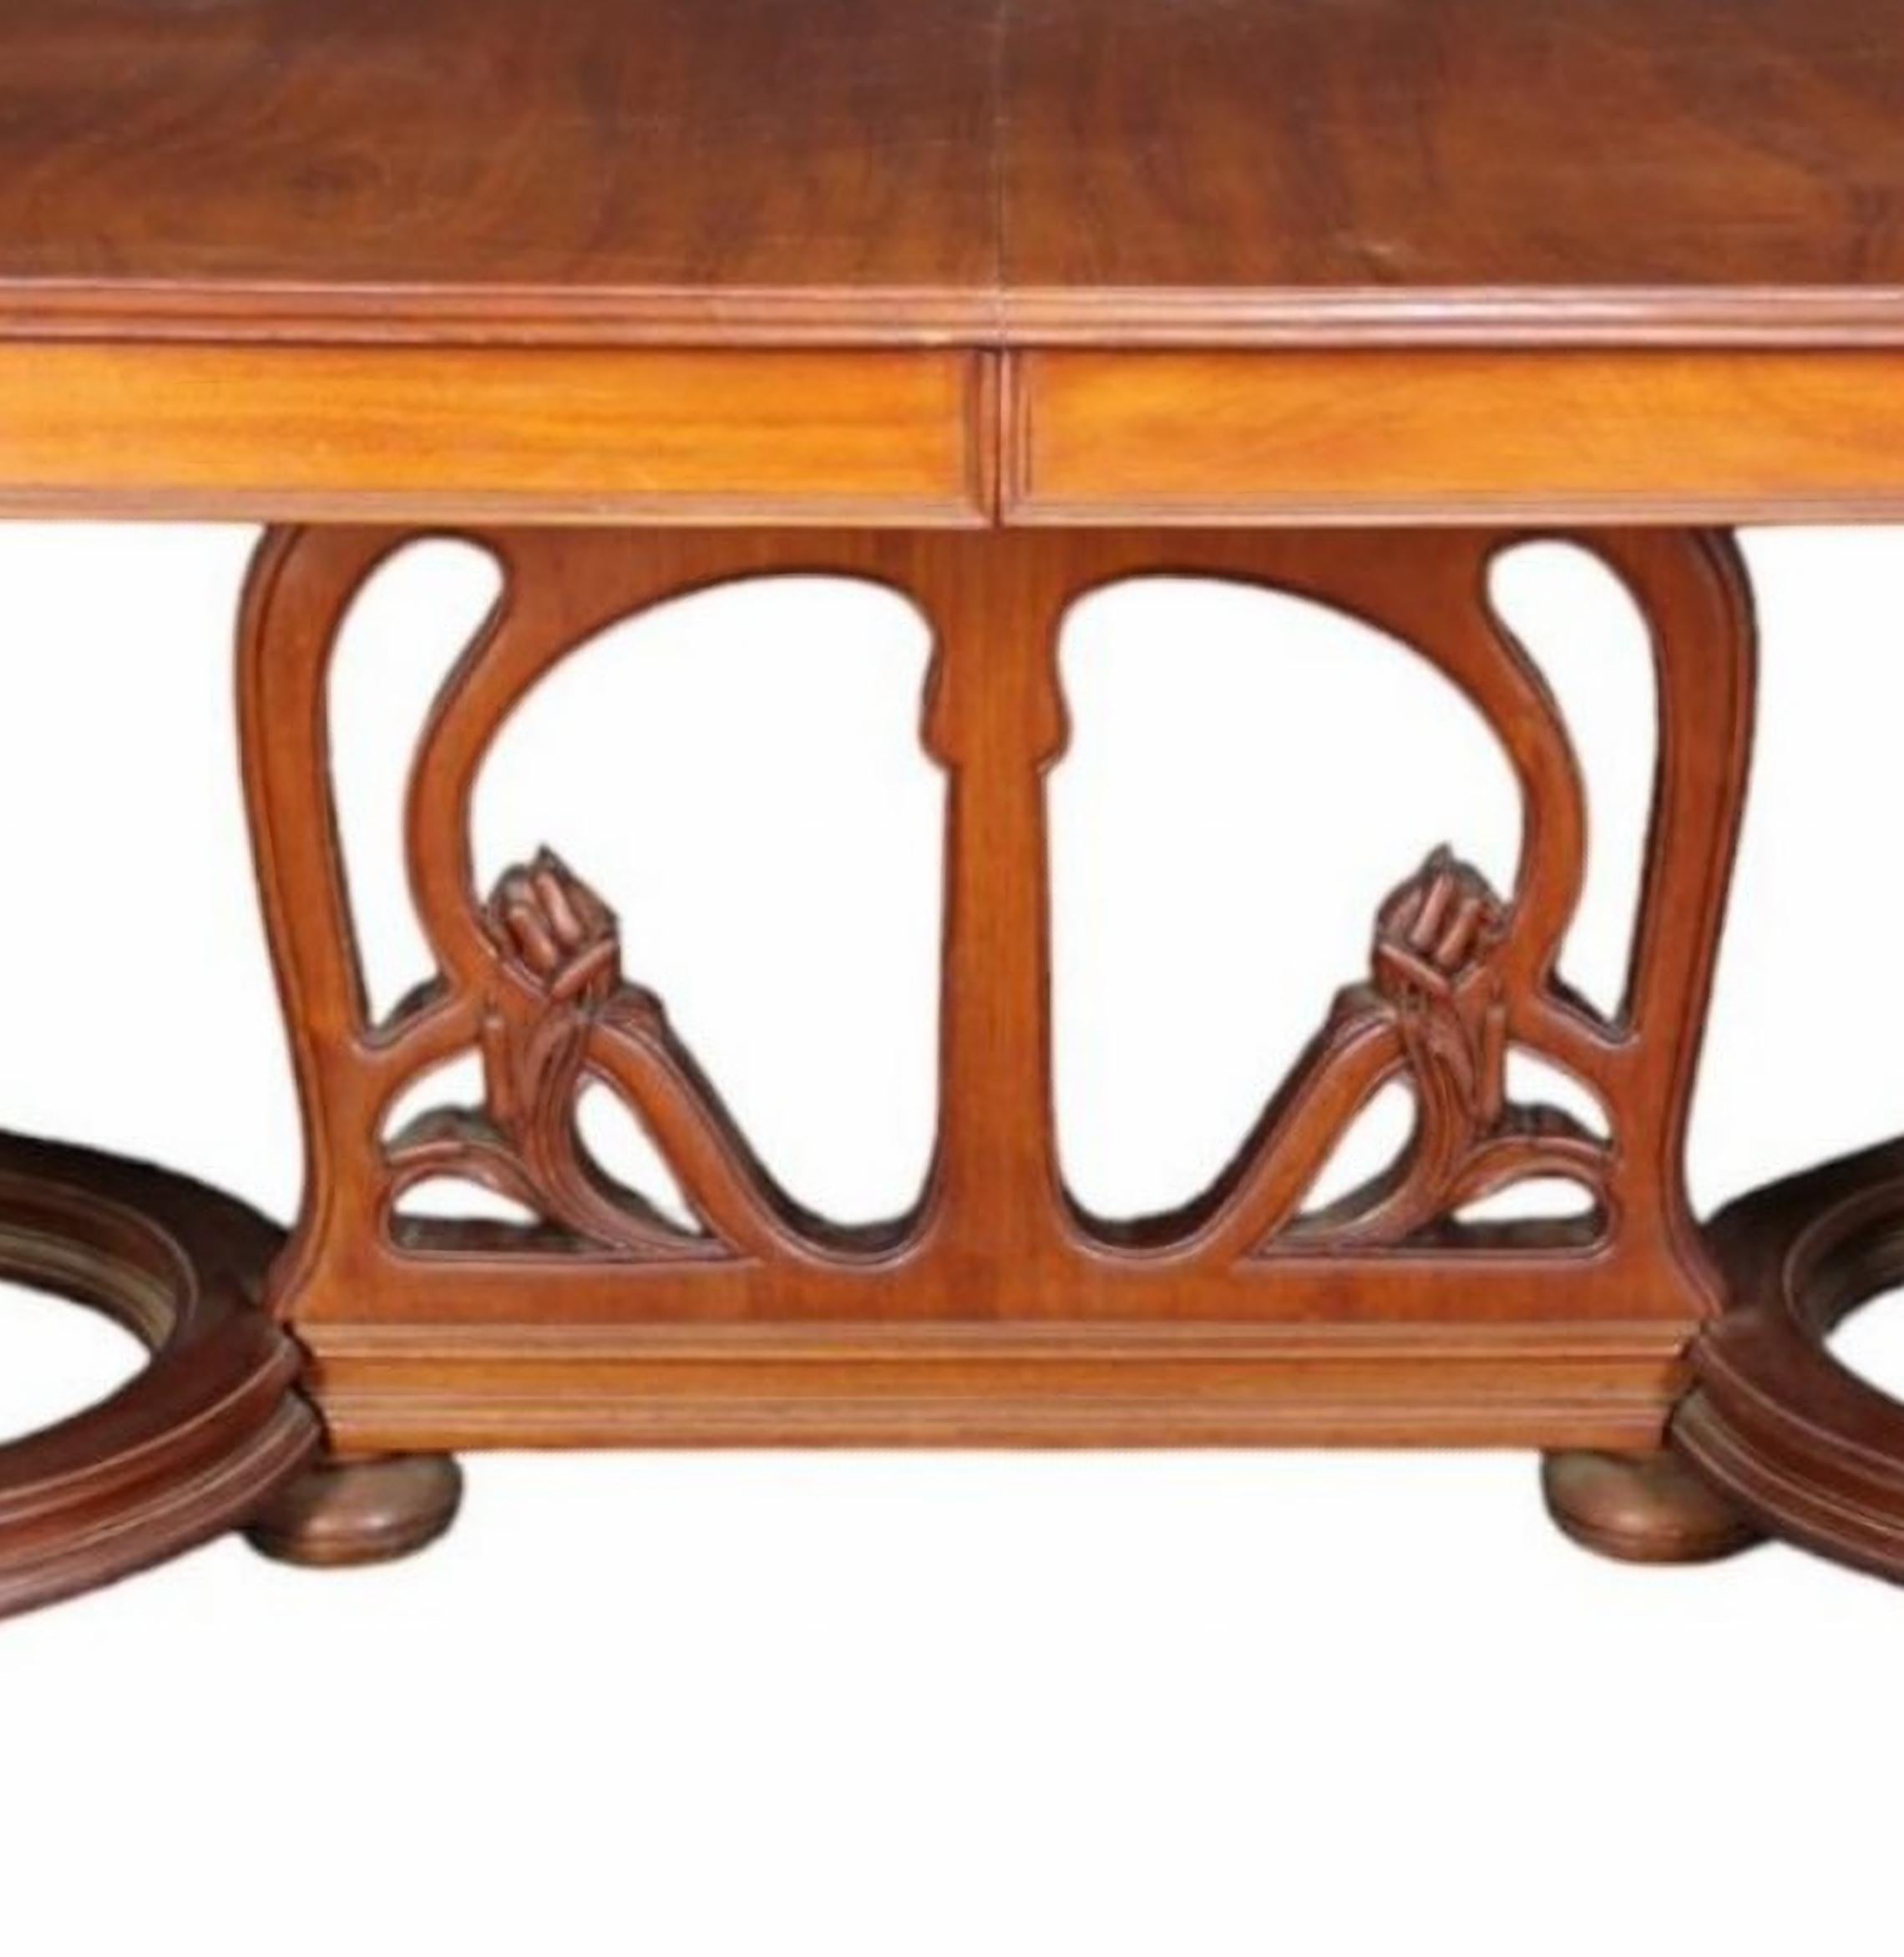 Importante table ART Déco italienne extensible du 19ème siècle
en bois d'acajou avec frises sculptées de motifs végétaux de marais
h 79 x 183 x 120 cm
bonnes conditions